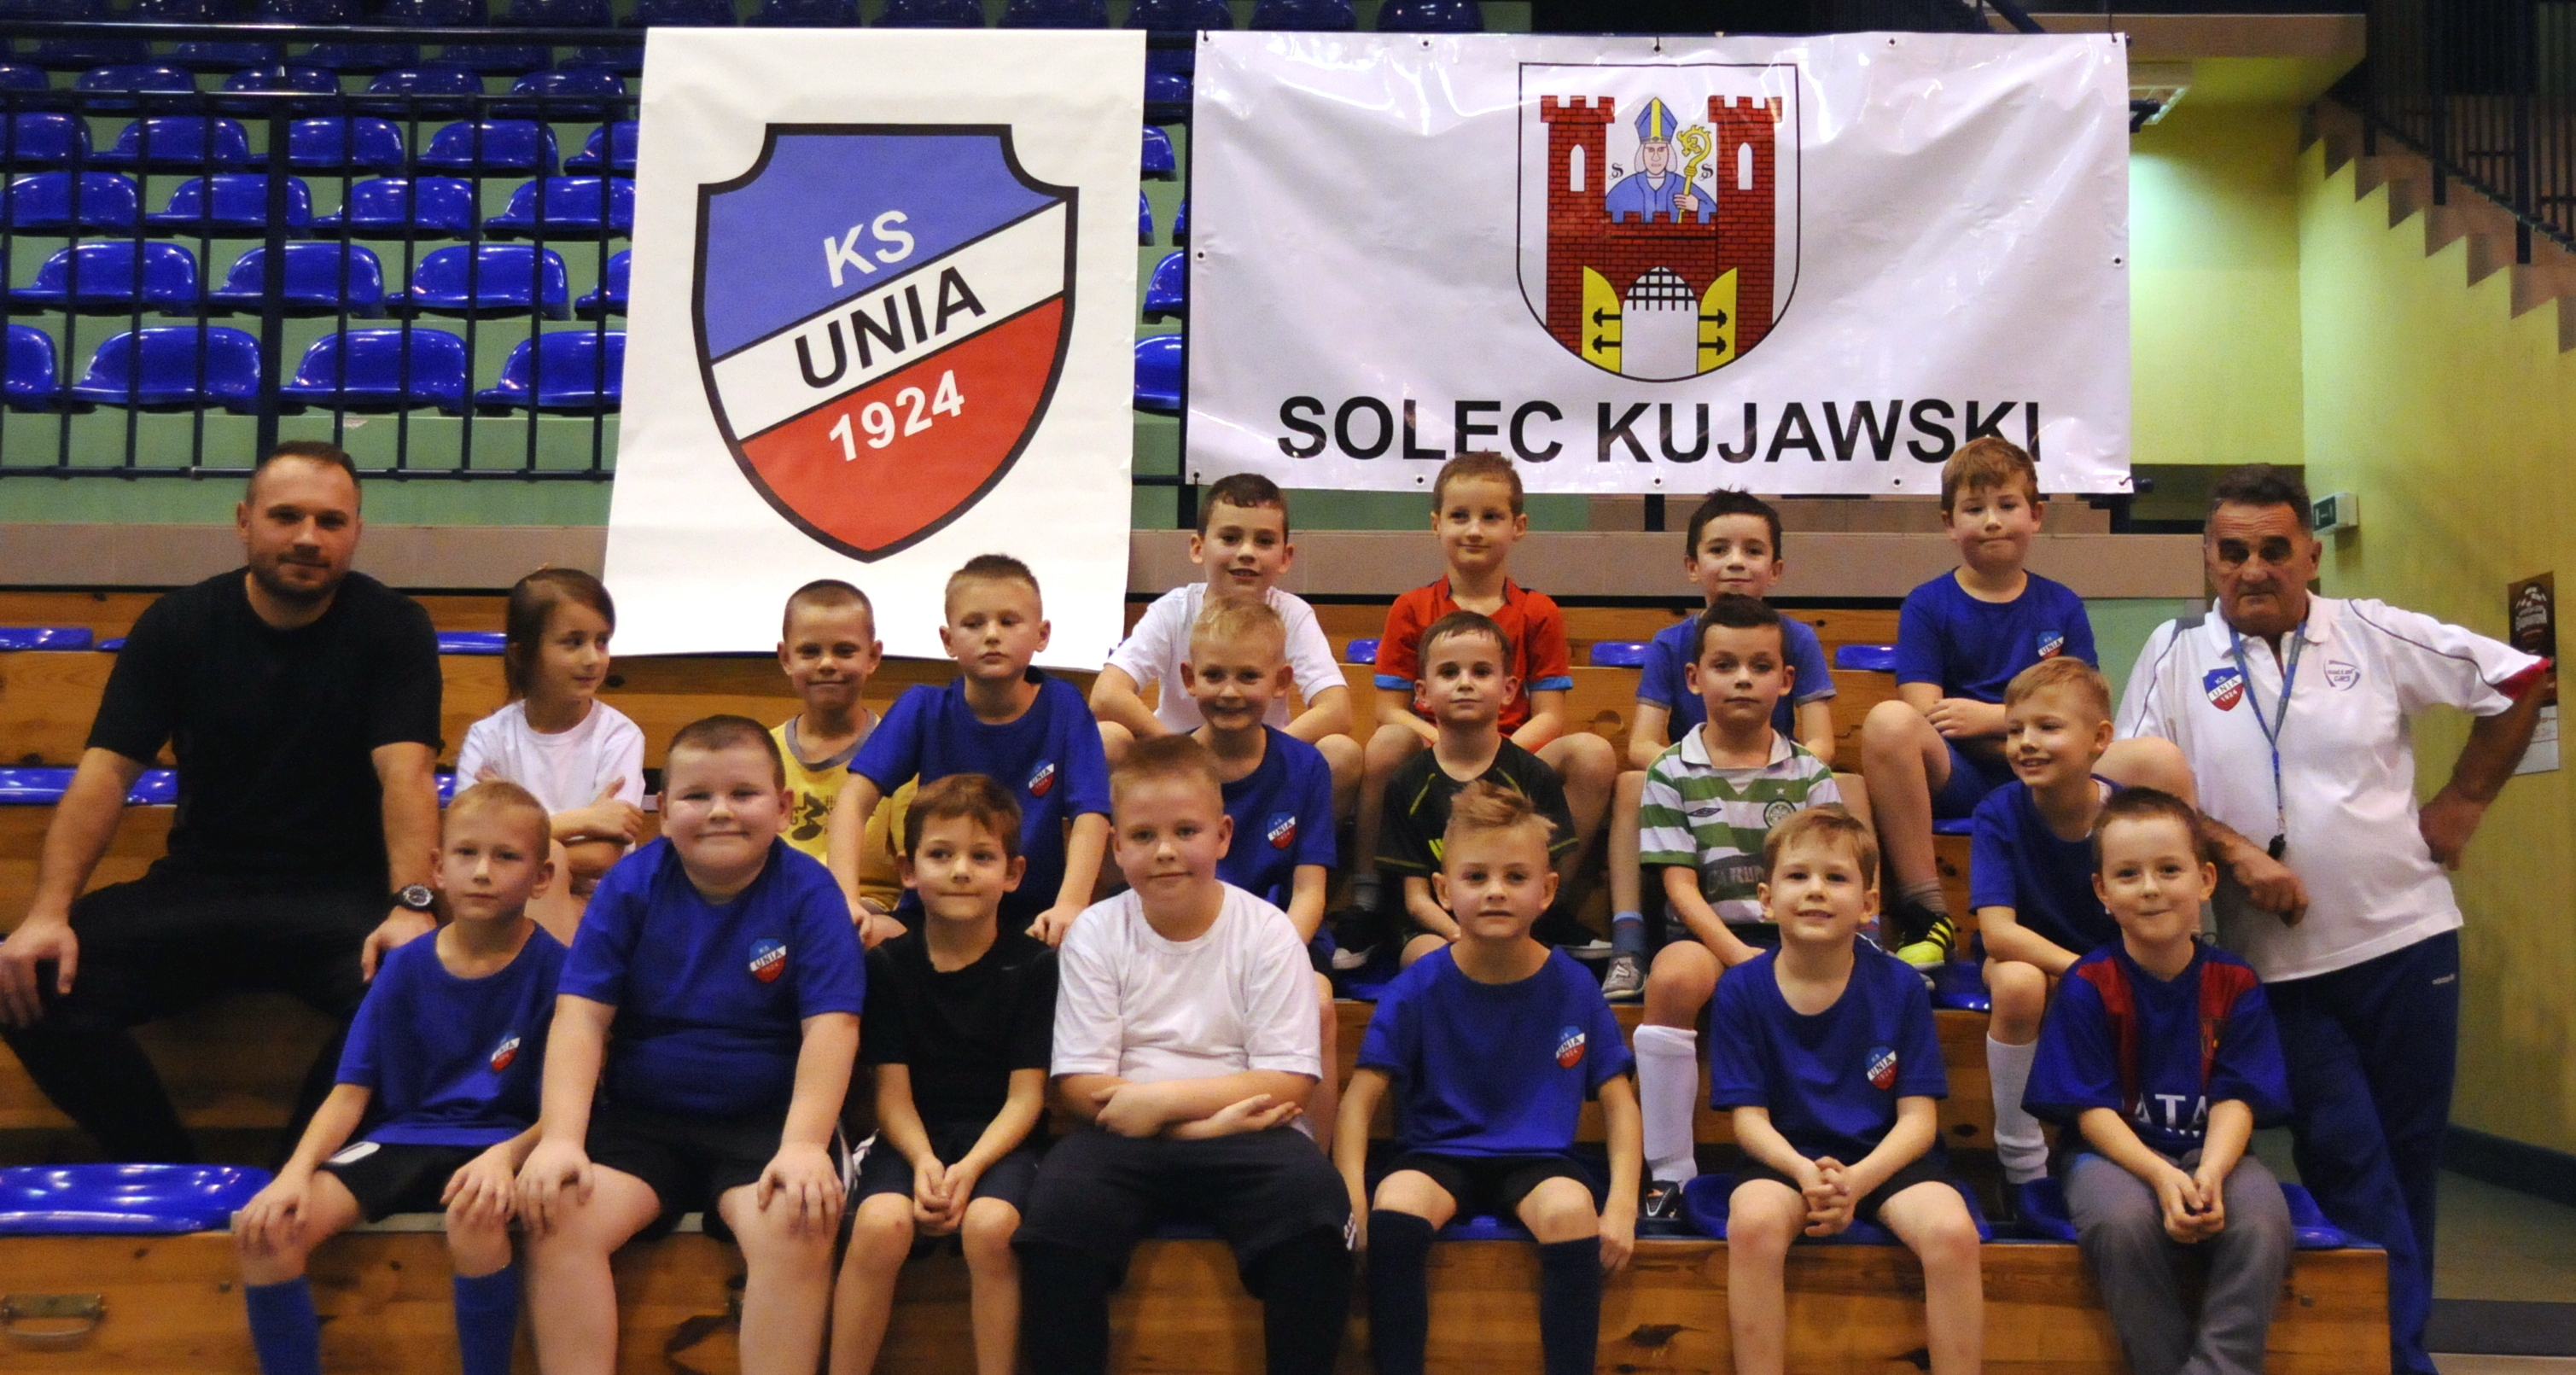 KS Unia Solec Kujawski - grupa ŻAK